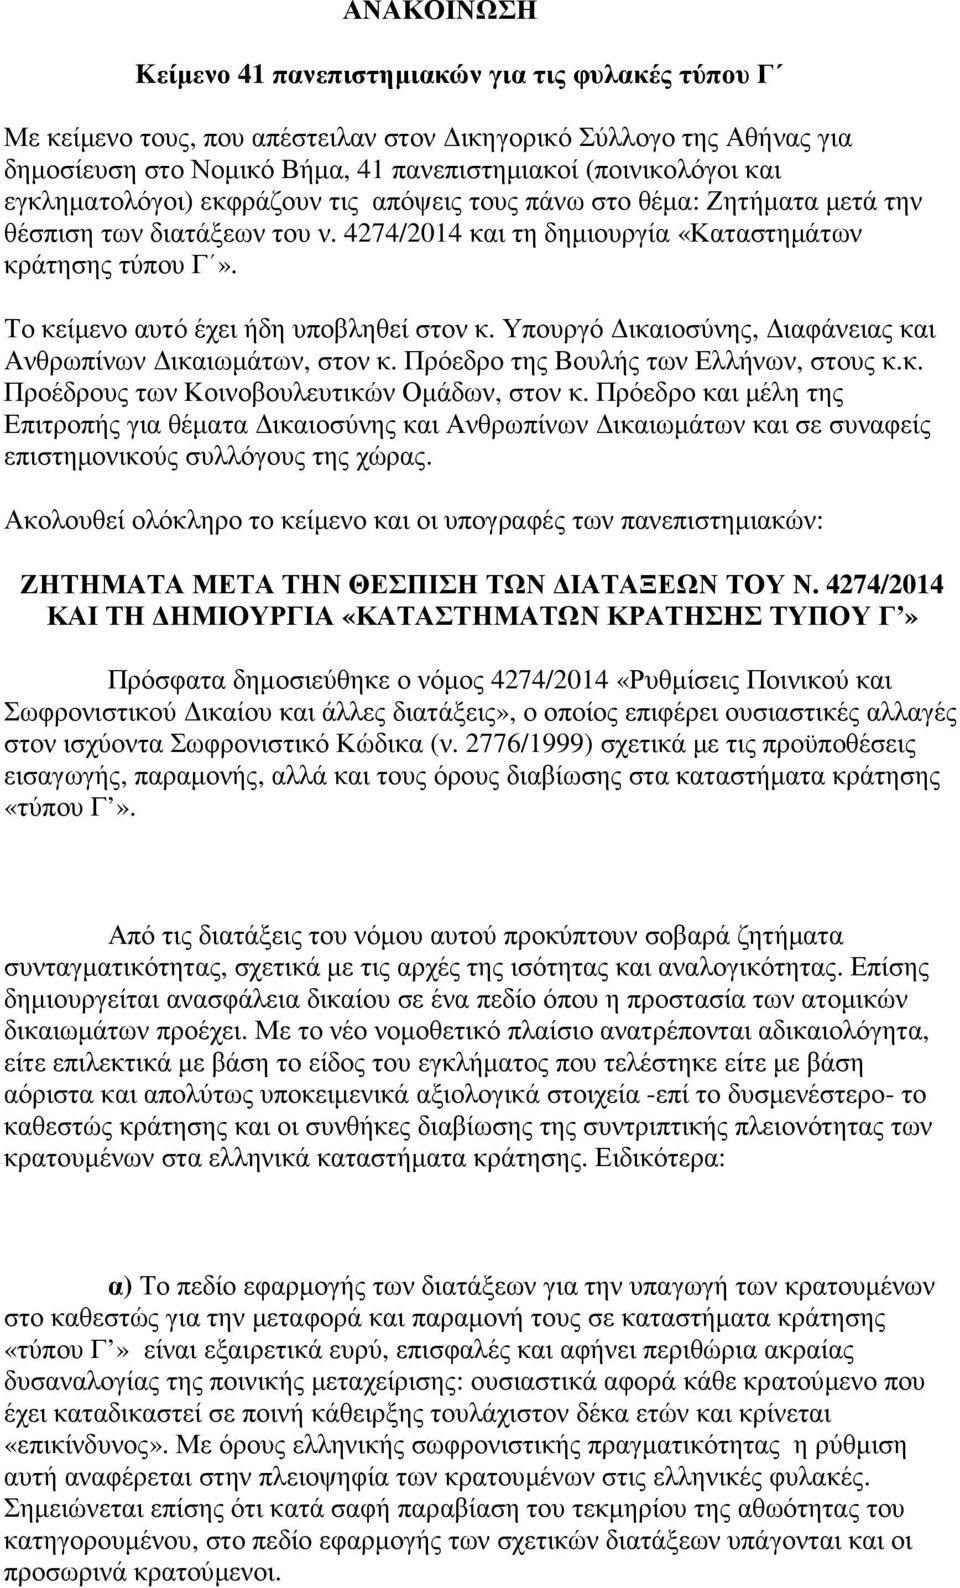 Το κείµενο αυτό έχει ήδη υποβληθεί στον κ. Υπουργό ικαιοσύνης, ιαφάνειας και Ανθρωπίνων ικαιωµάτων, στον κ. Πρόεδρο της Βουλής των Ελλήνων, στους κ.κ. Προέδρους των Κοινοβουλευτικών Οµάδων, στον κ.